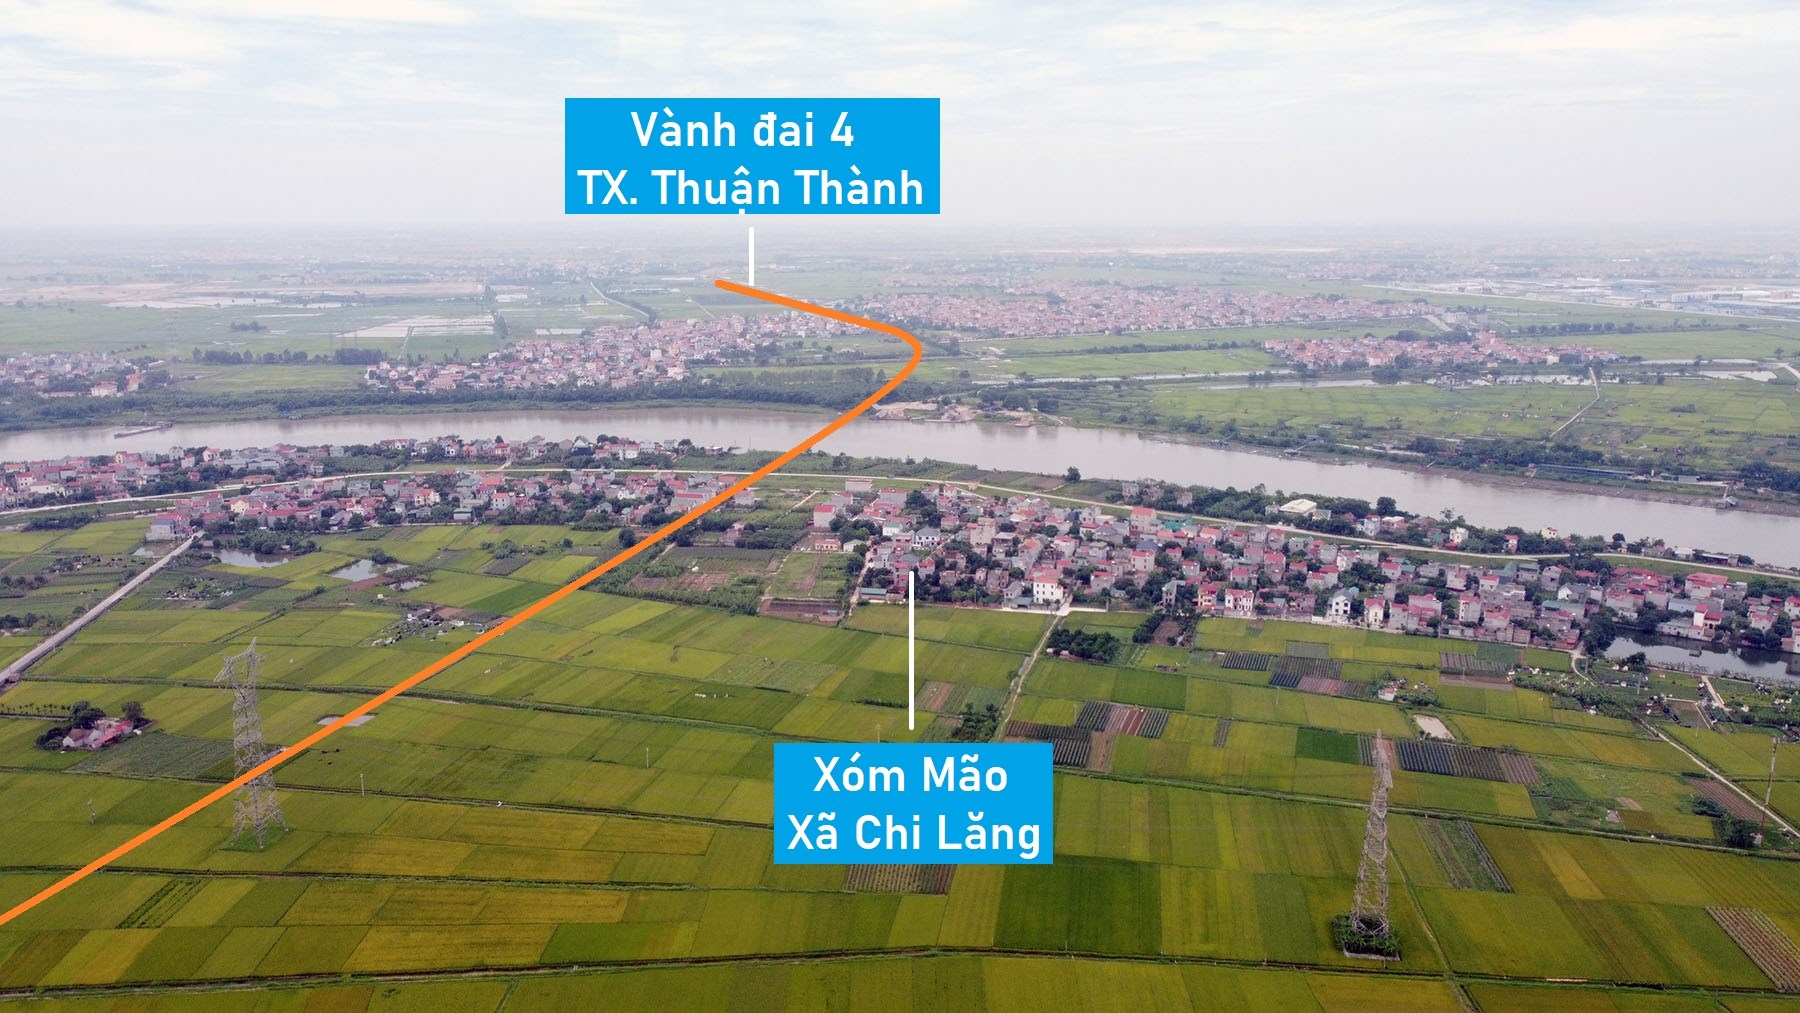 Toàn cảnh vị trí quy hoạch cầu đường sắt vượt sông Đuống nối Gia Bình - Quế Võ, Bắc Ninh